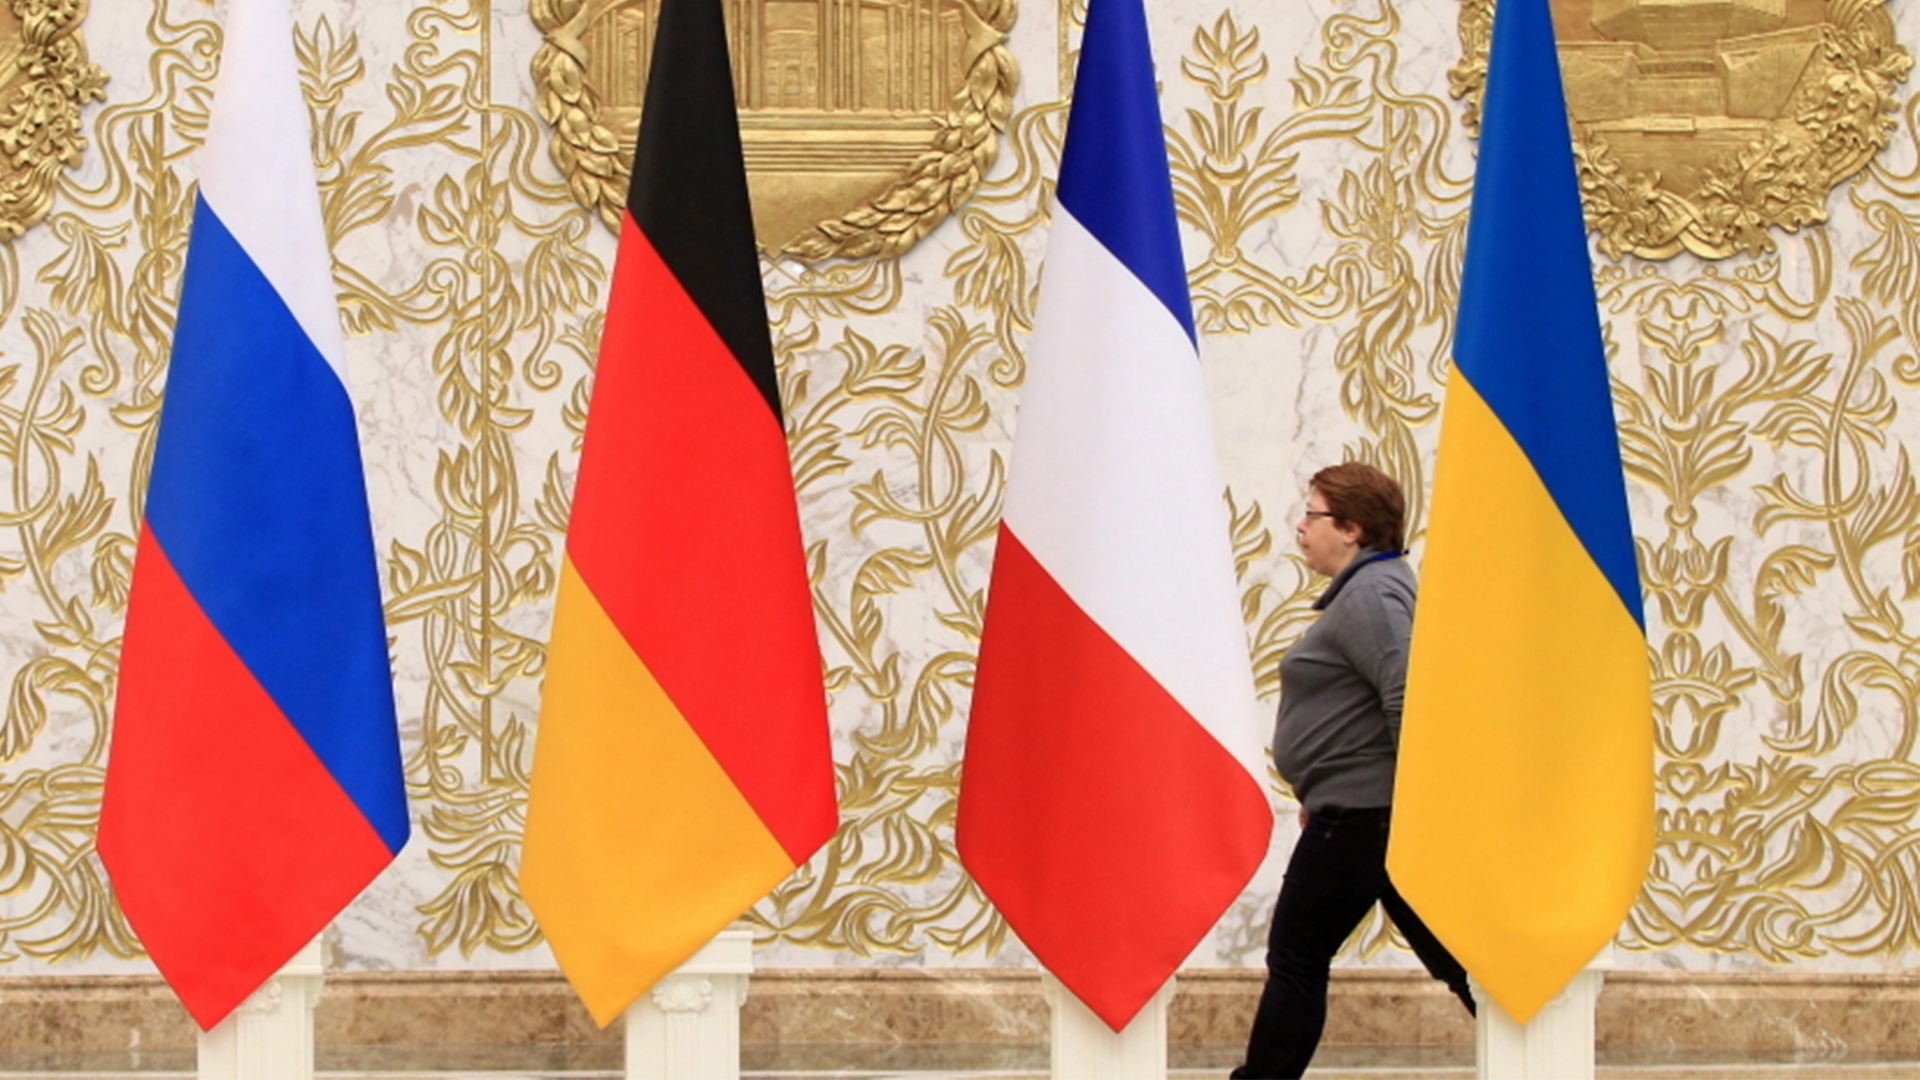 Treffen im Normandie-Format: Ukraine und Russland sprechen wieder